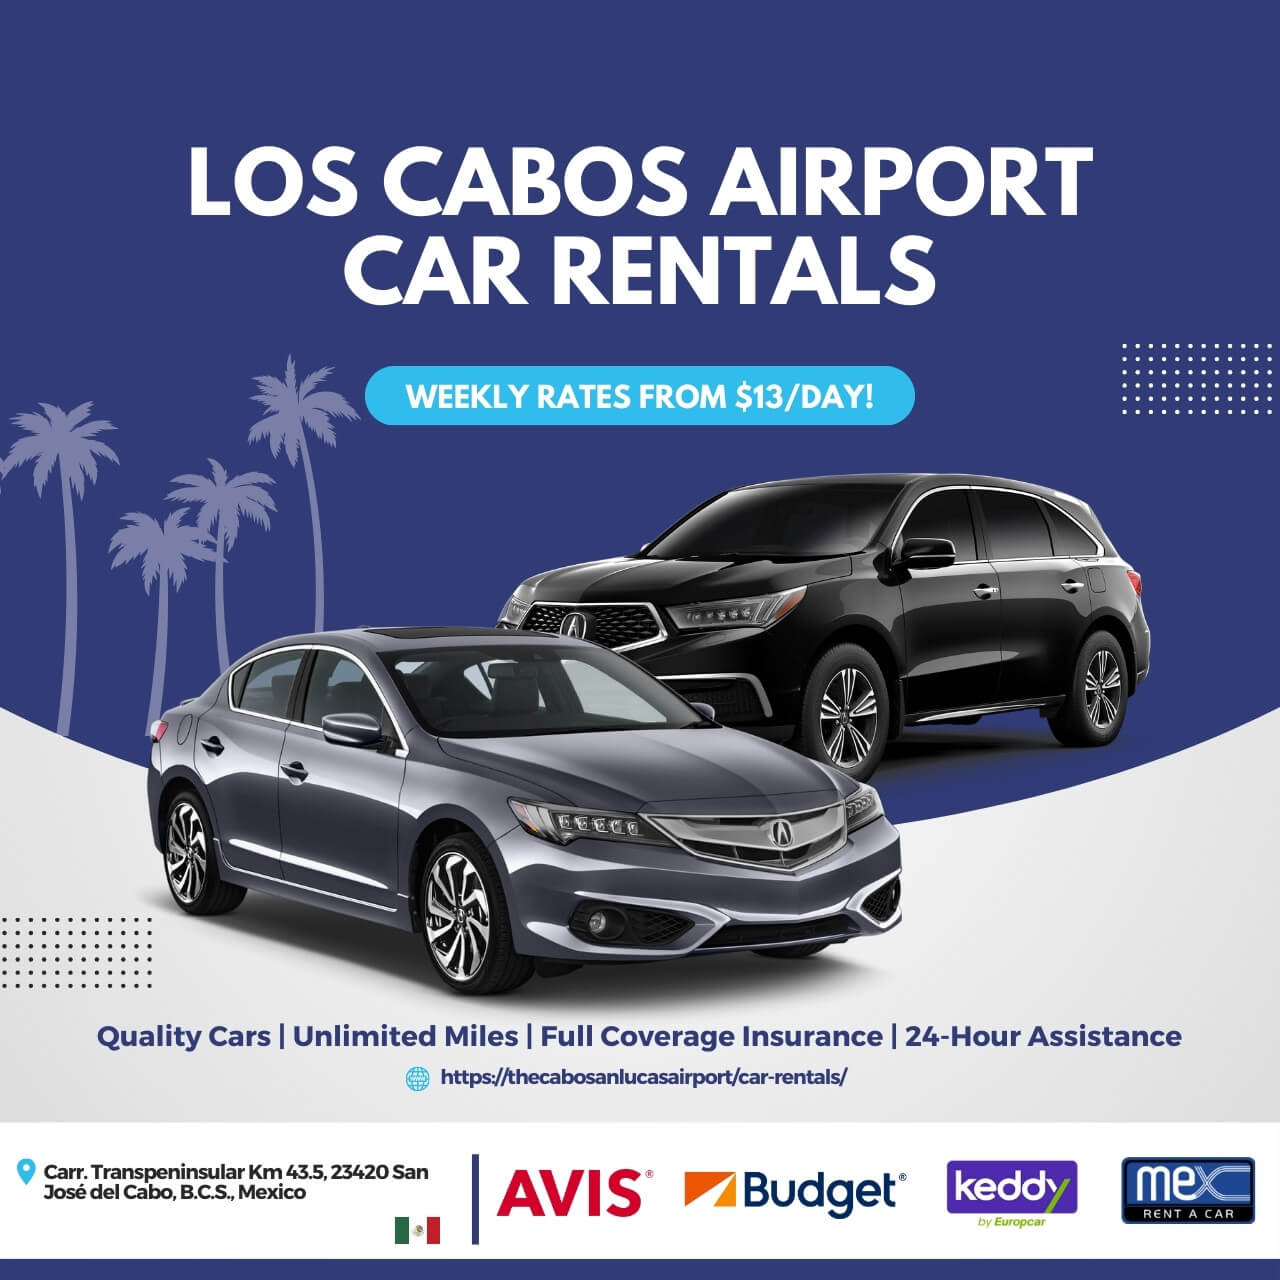 Los Cabos Airport Car Rentals